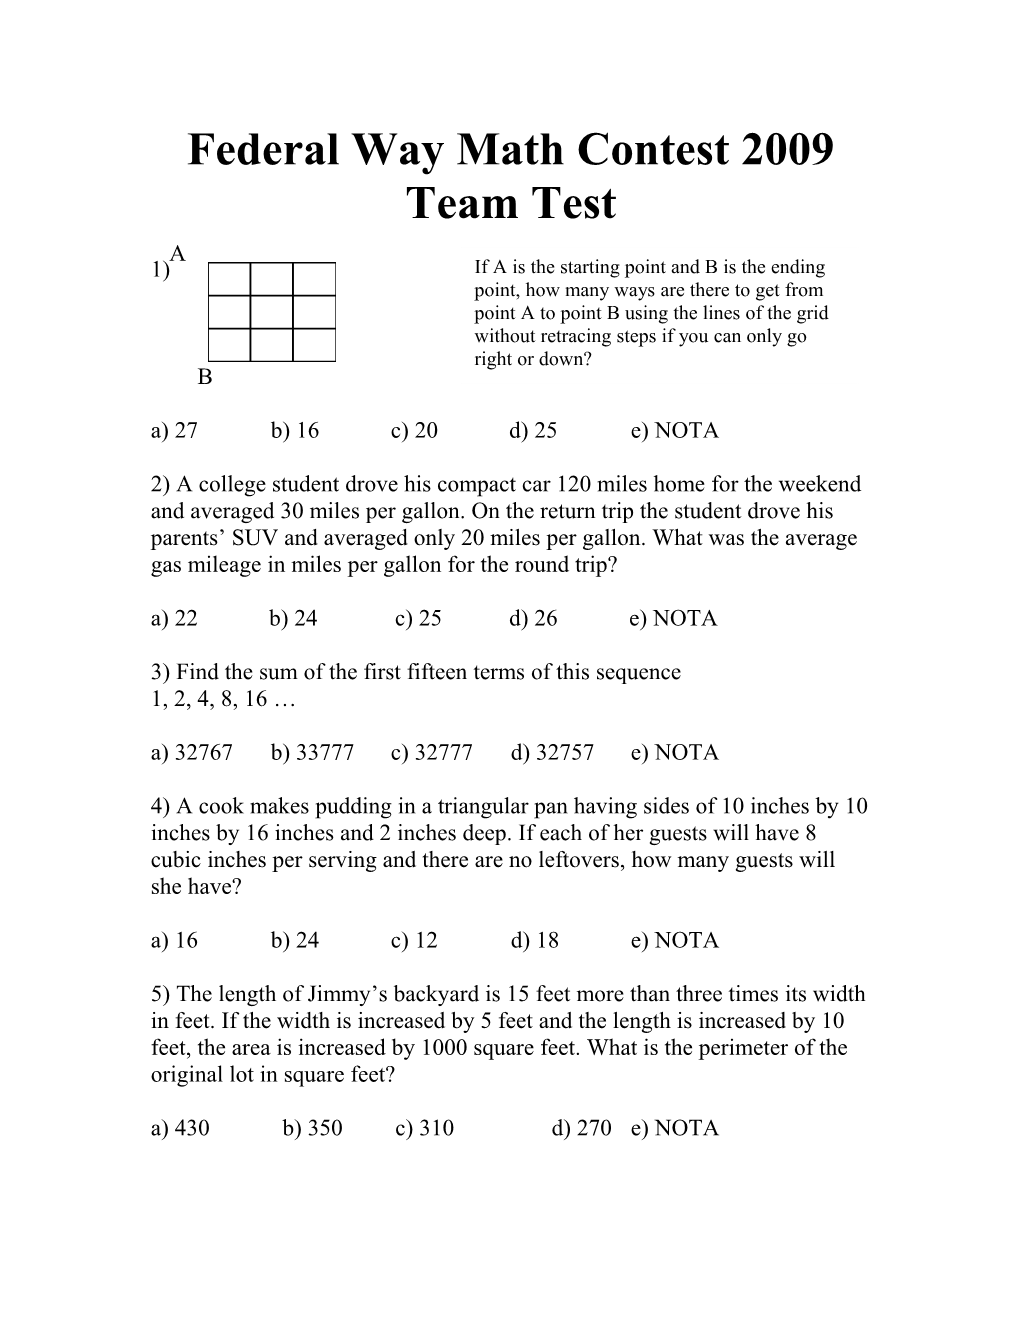 Federal Way Math Contest 2008